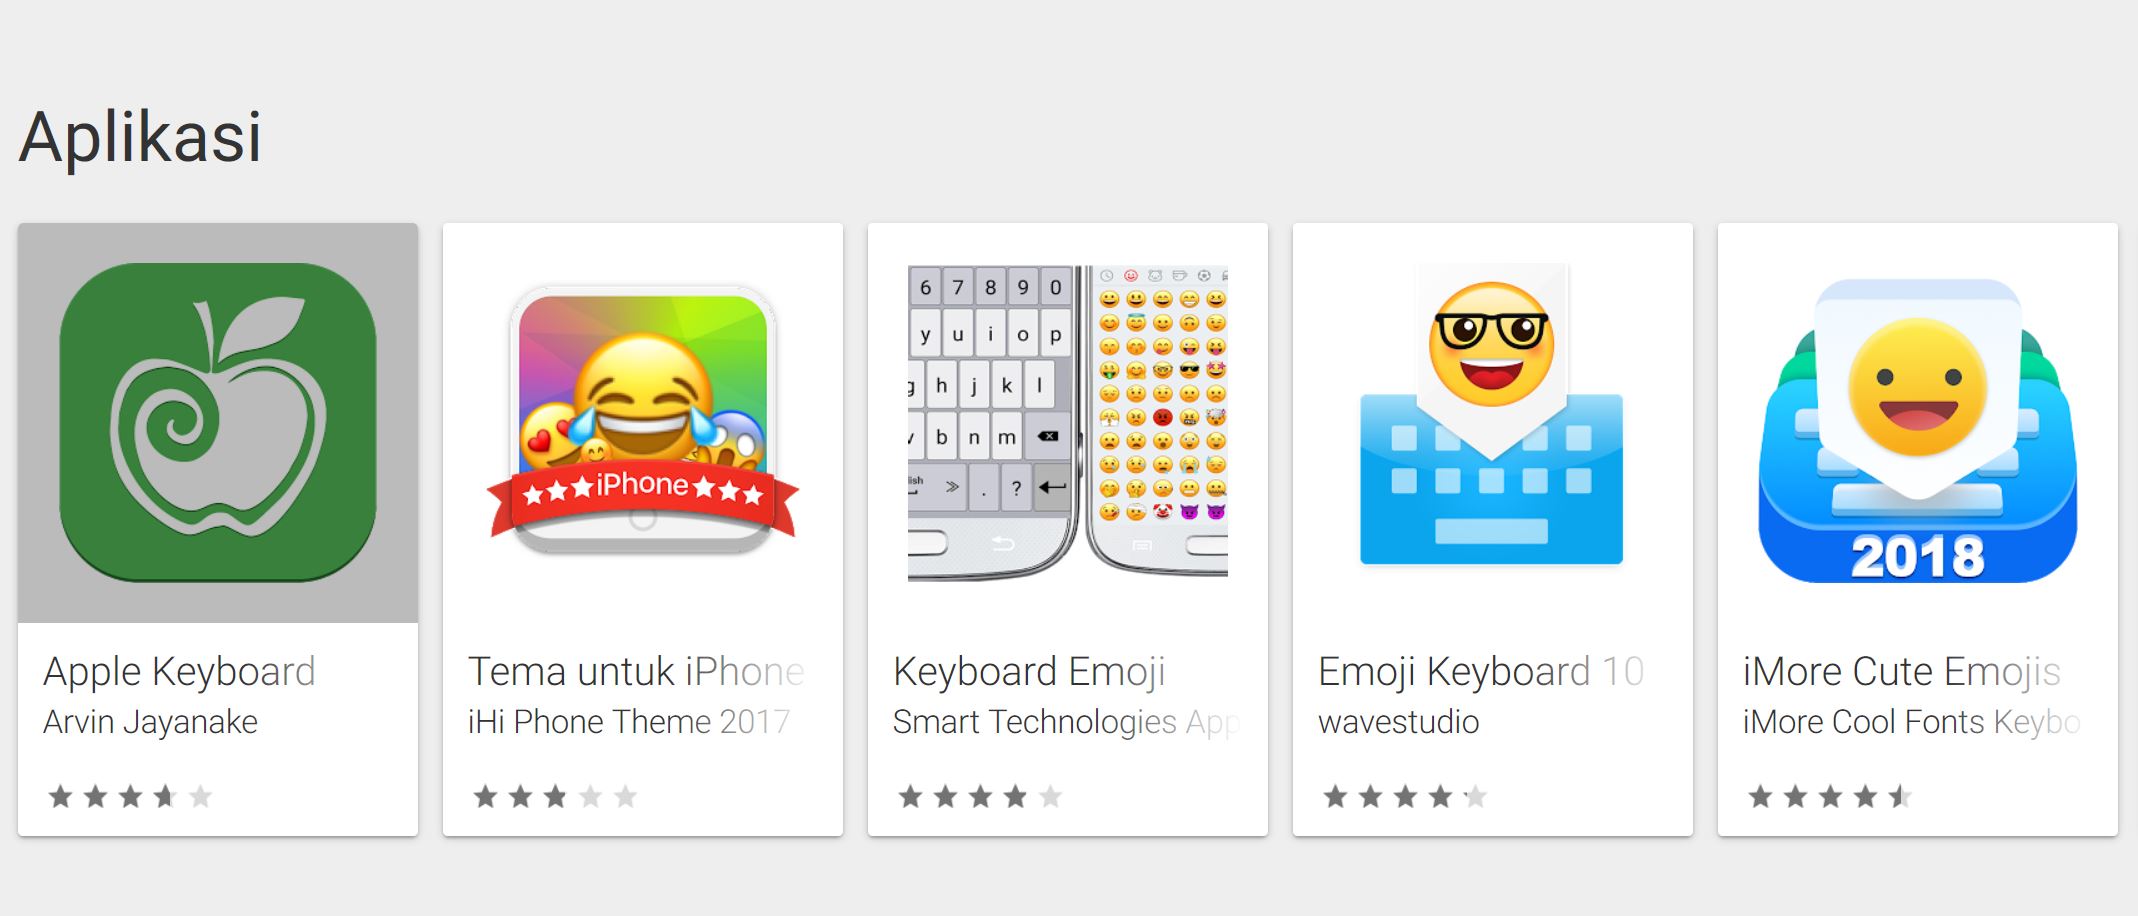 Cara Mengubah Emoji Android Menjadi Emoji Iphone Bacolahcom